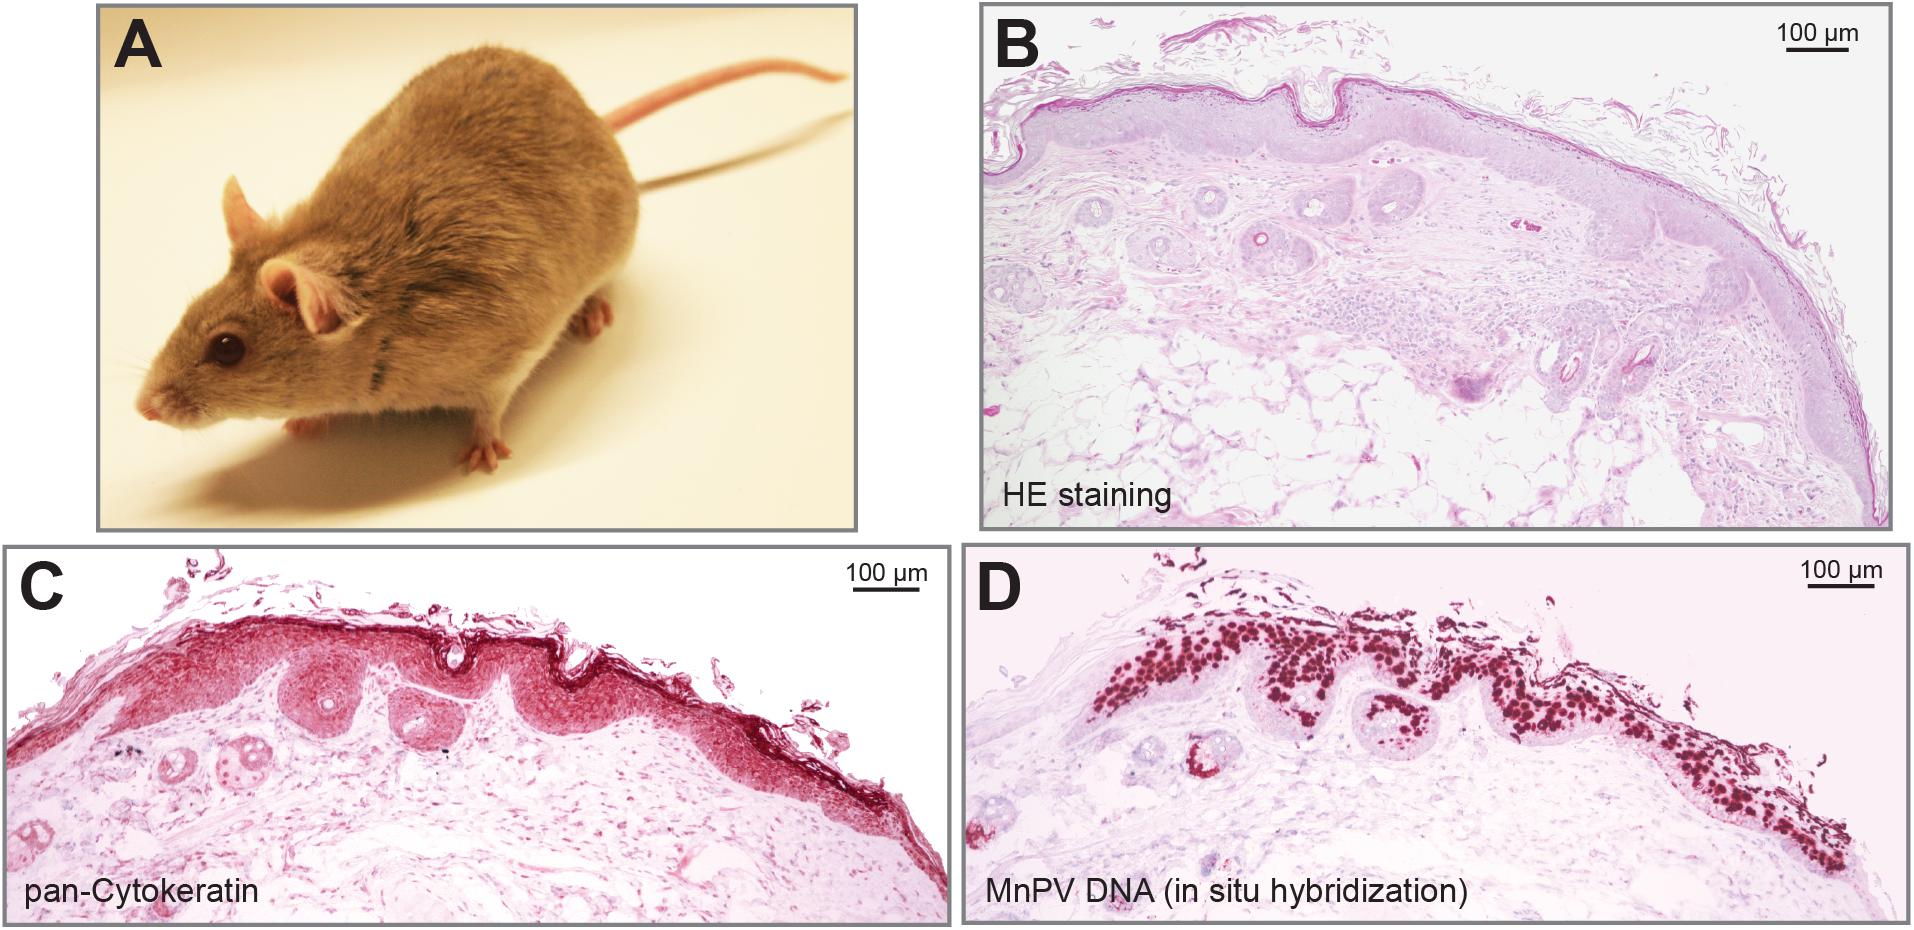 Human papillomavirus infection mice. Human papillomavirus and mice